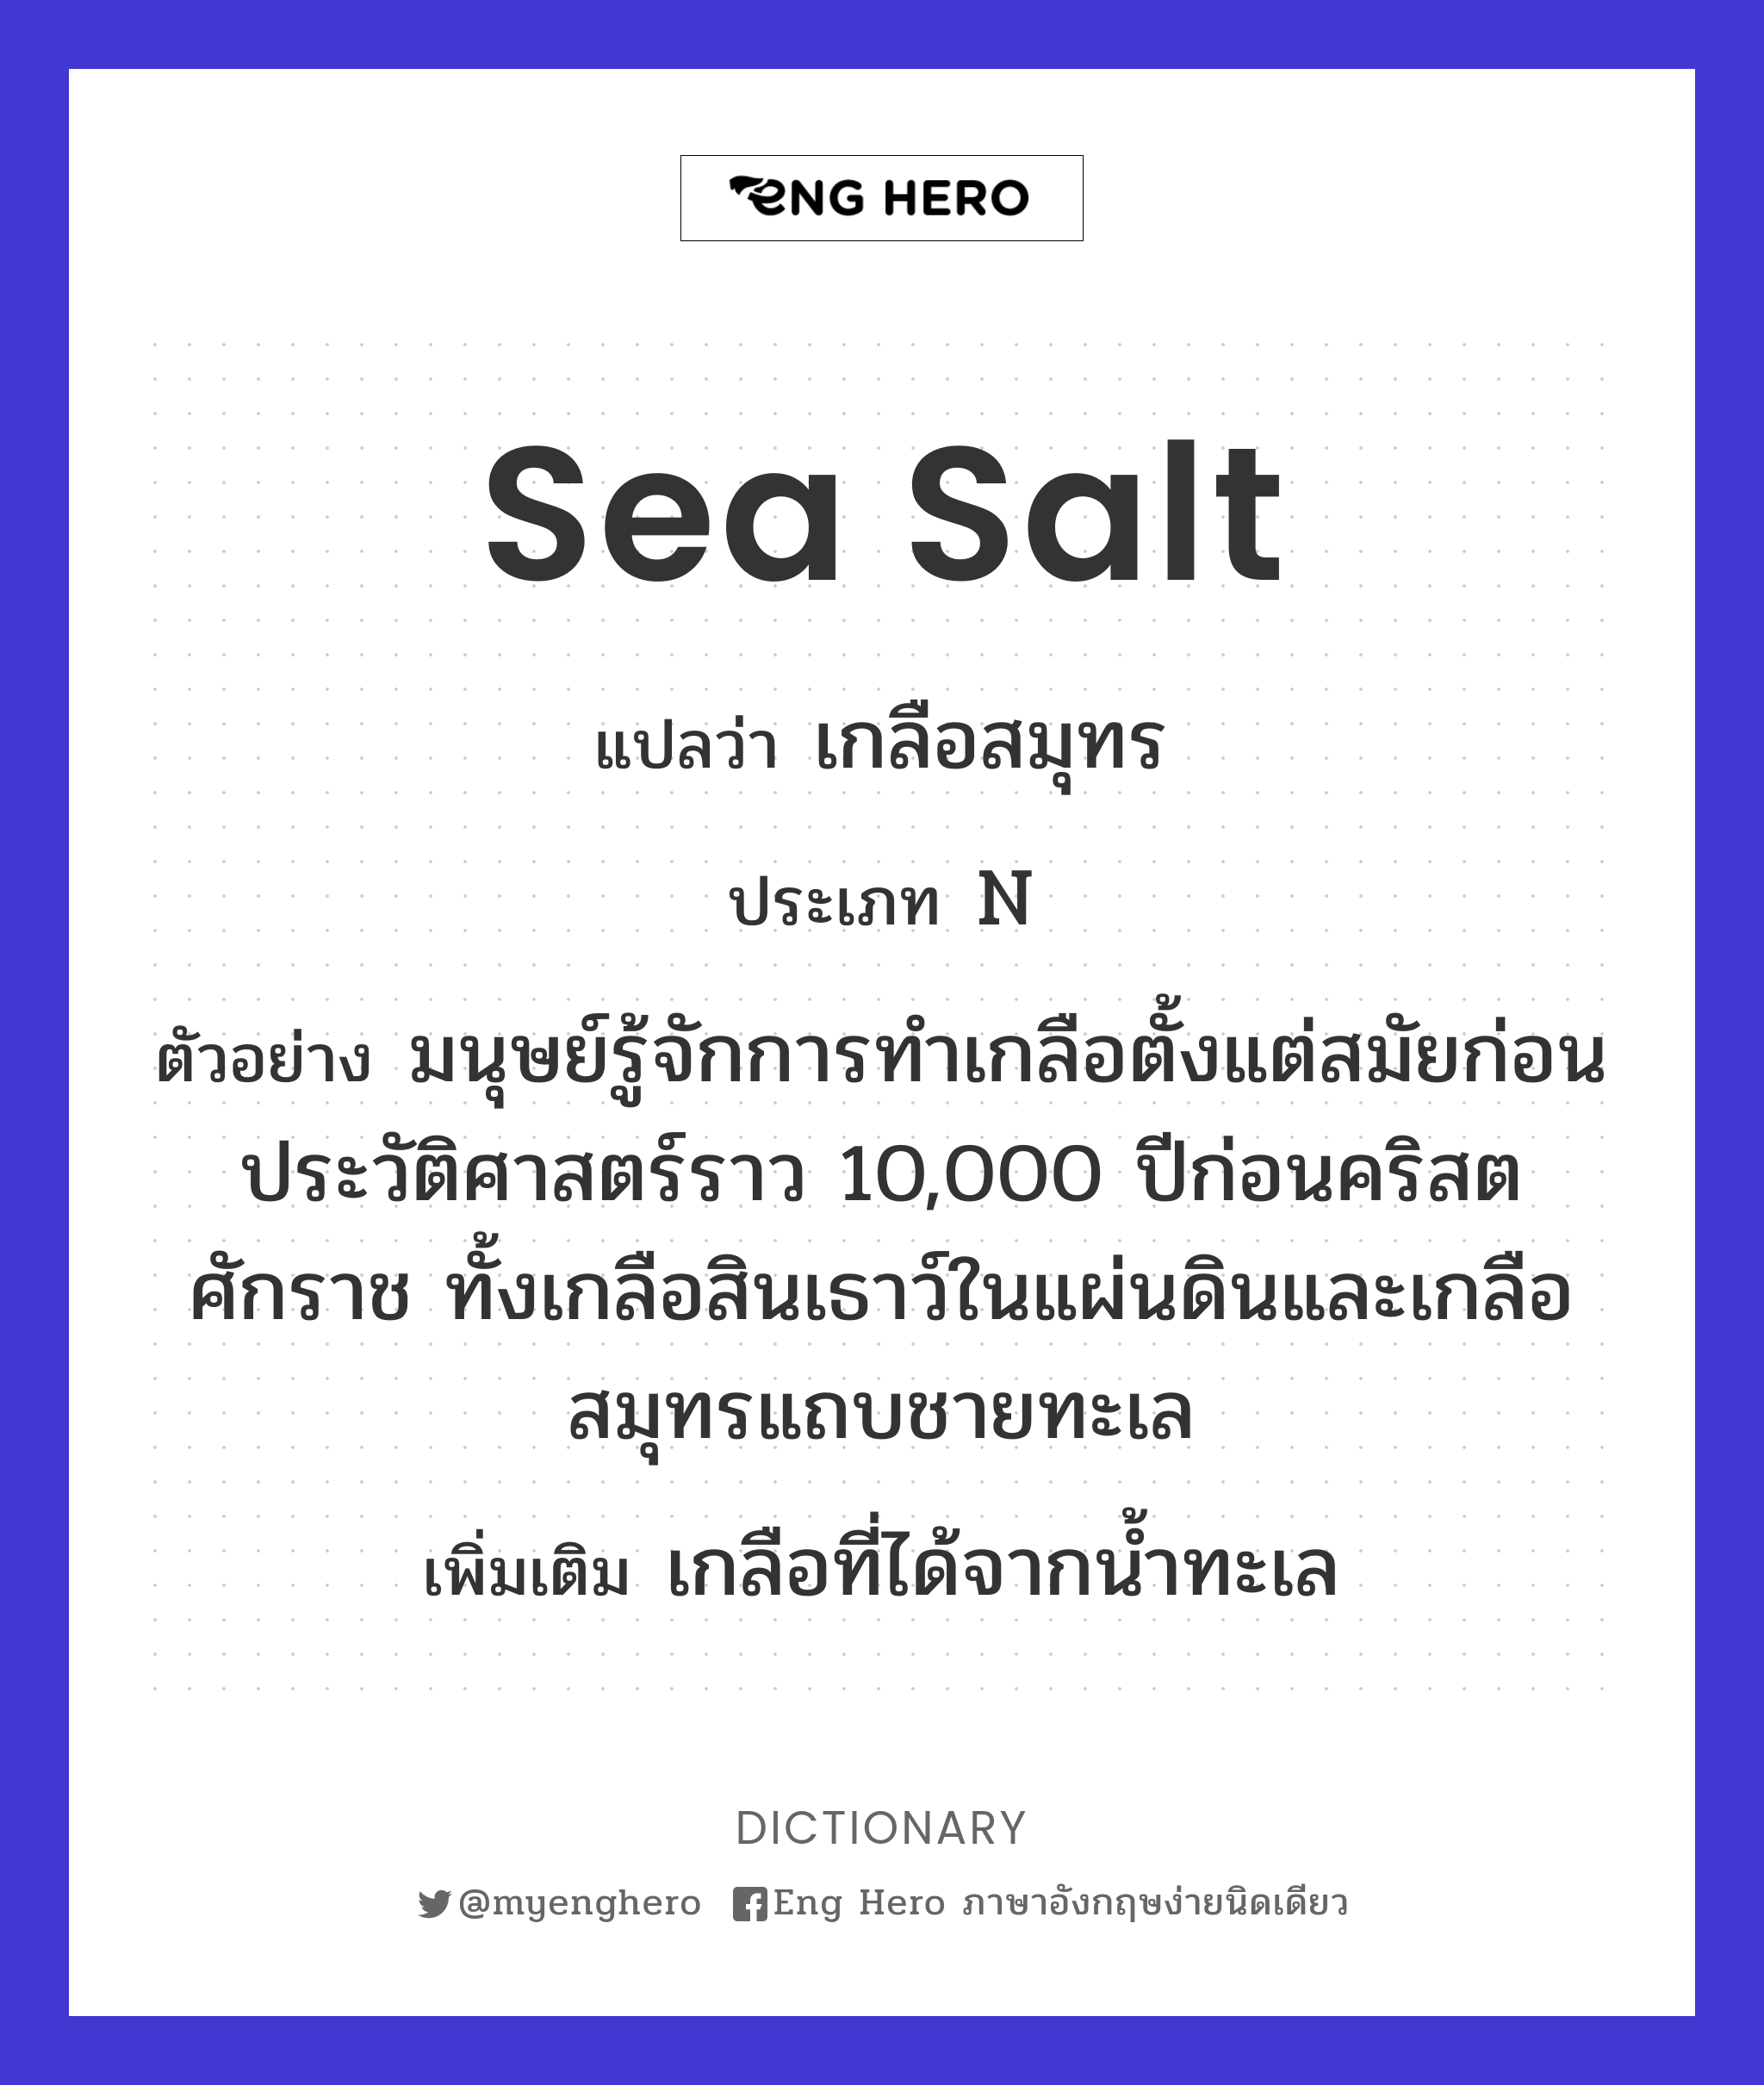 sea salt